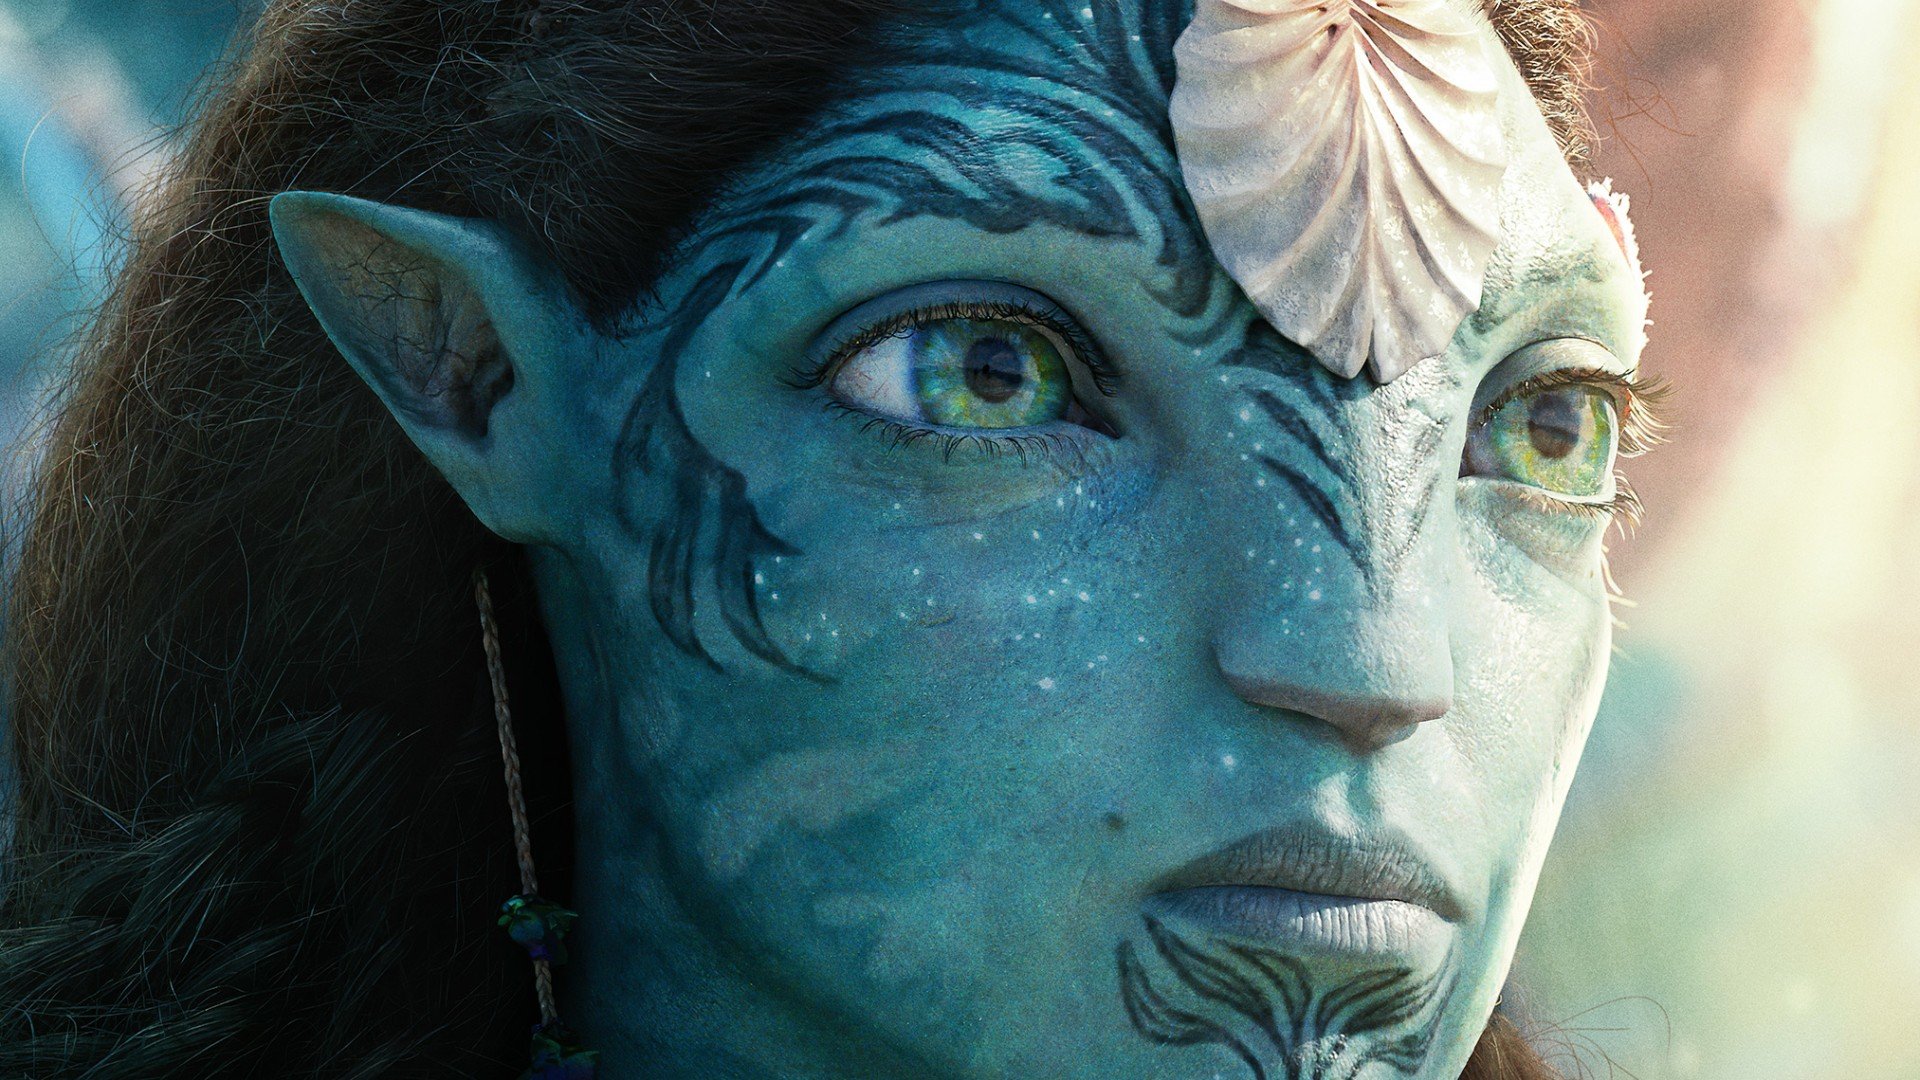 Fondos de pantalla Ronal Avatar: El Camino del Agua